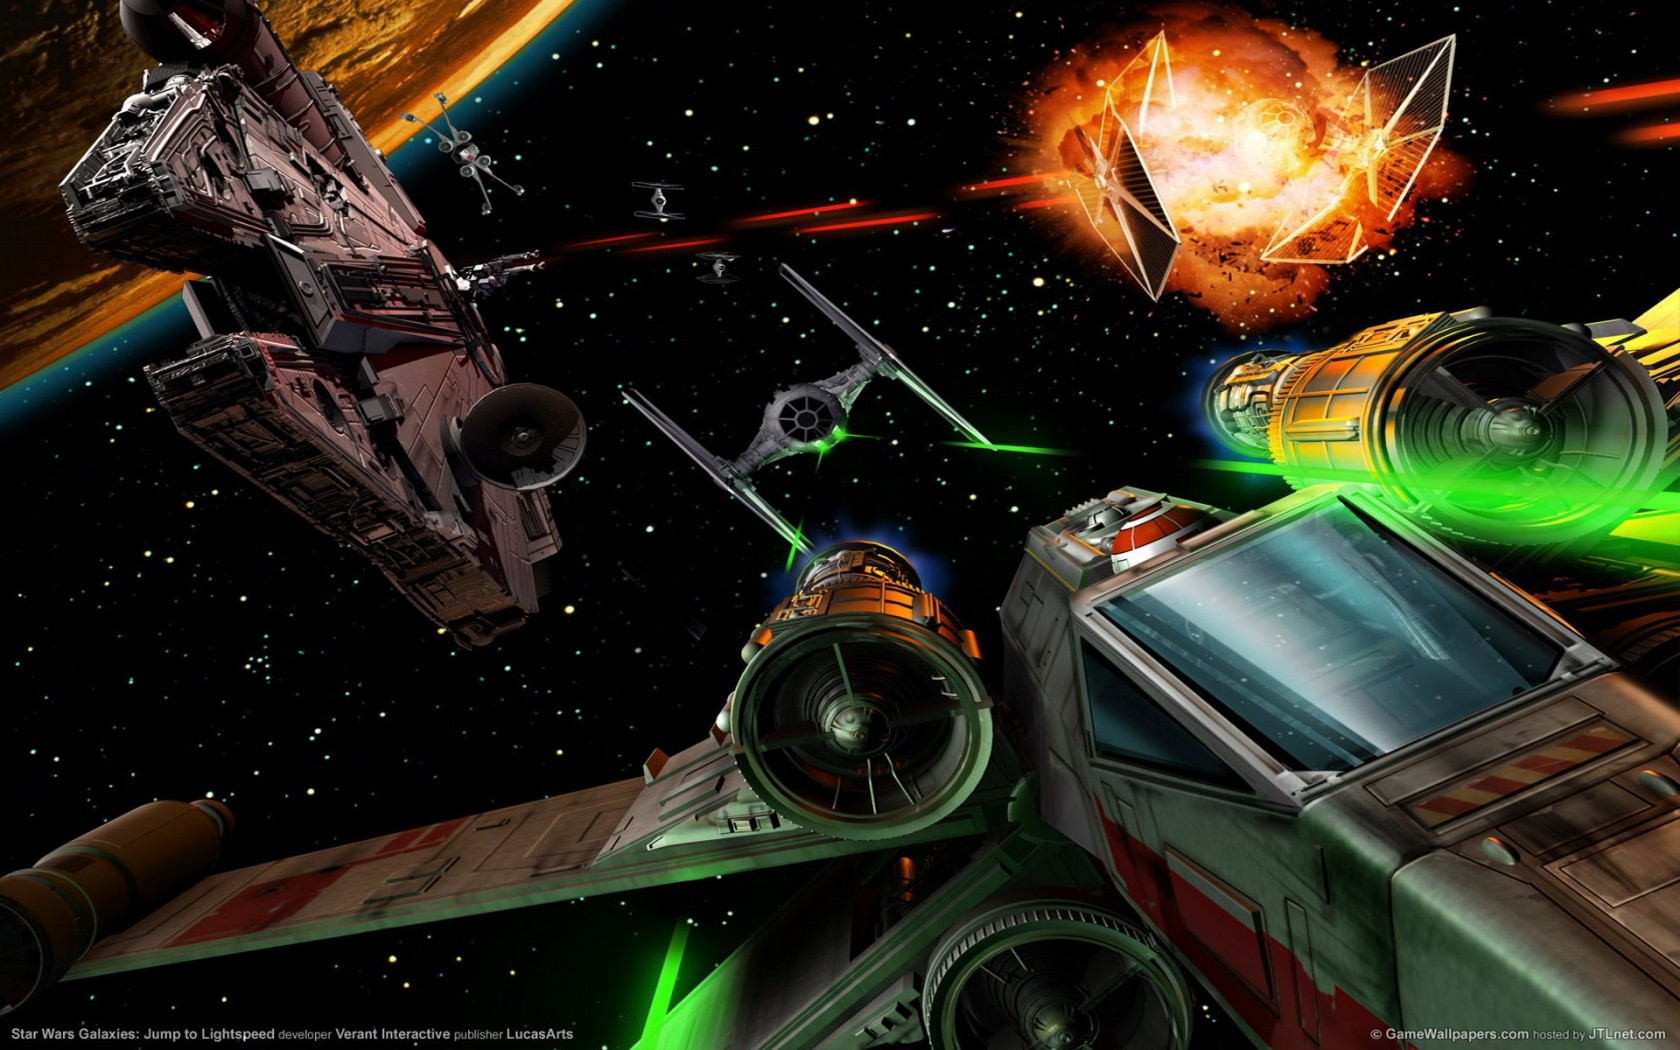 Star Wars Millennium Falcon Space Ship Combat Action